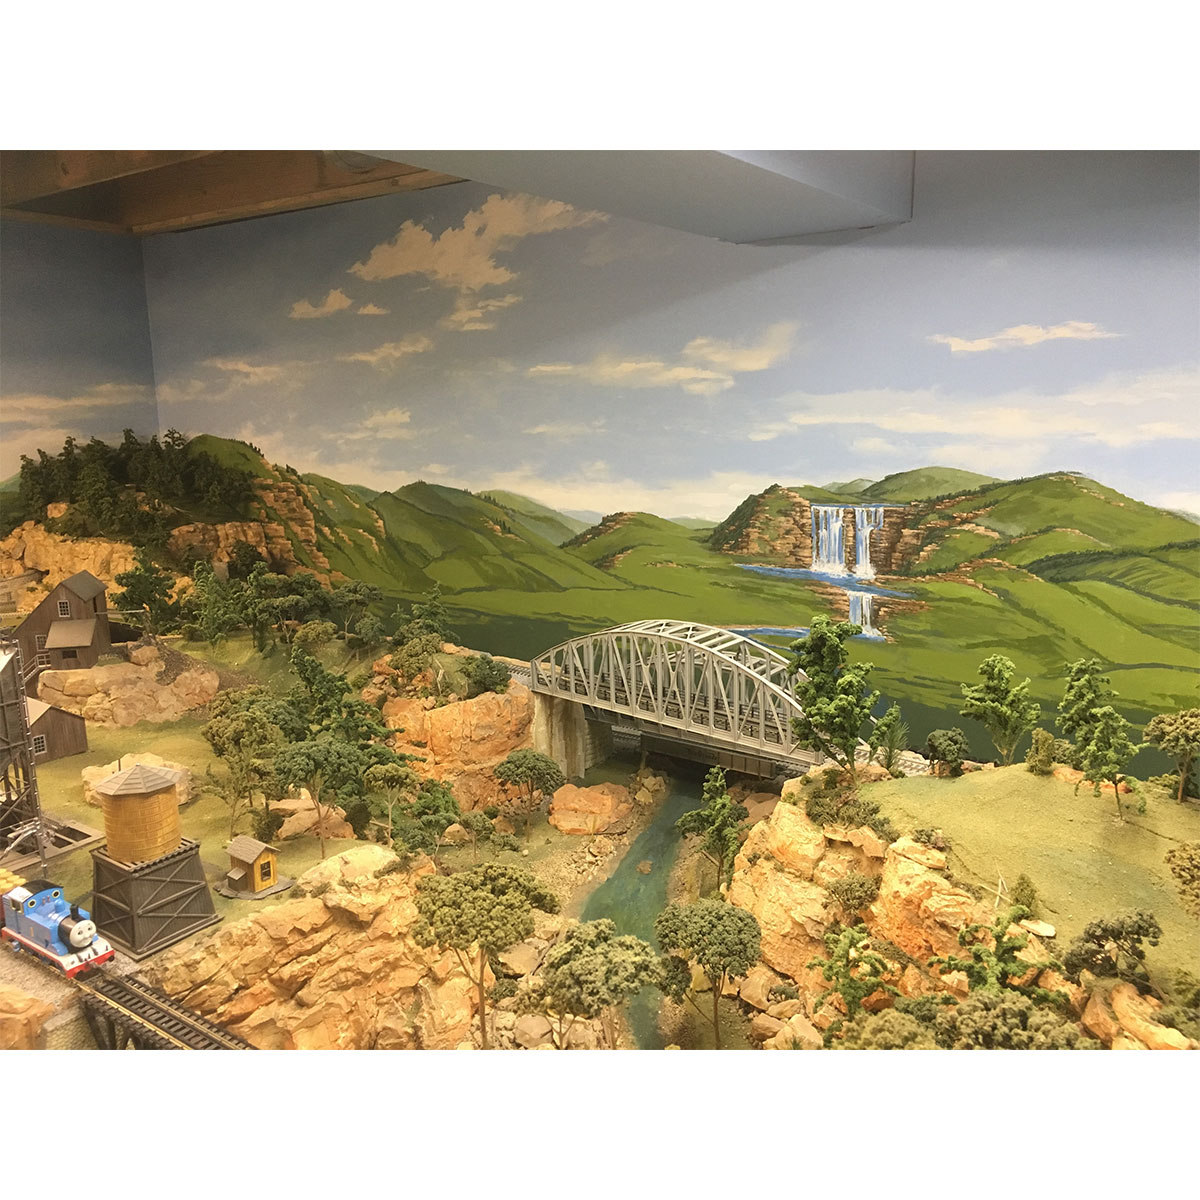 model railroad murals or backdrops